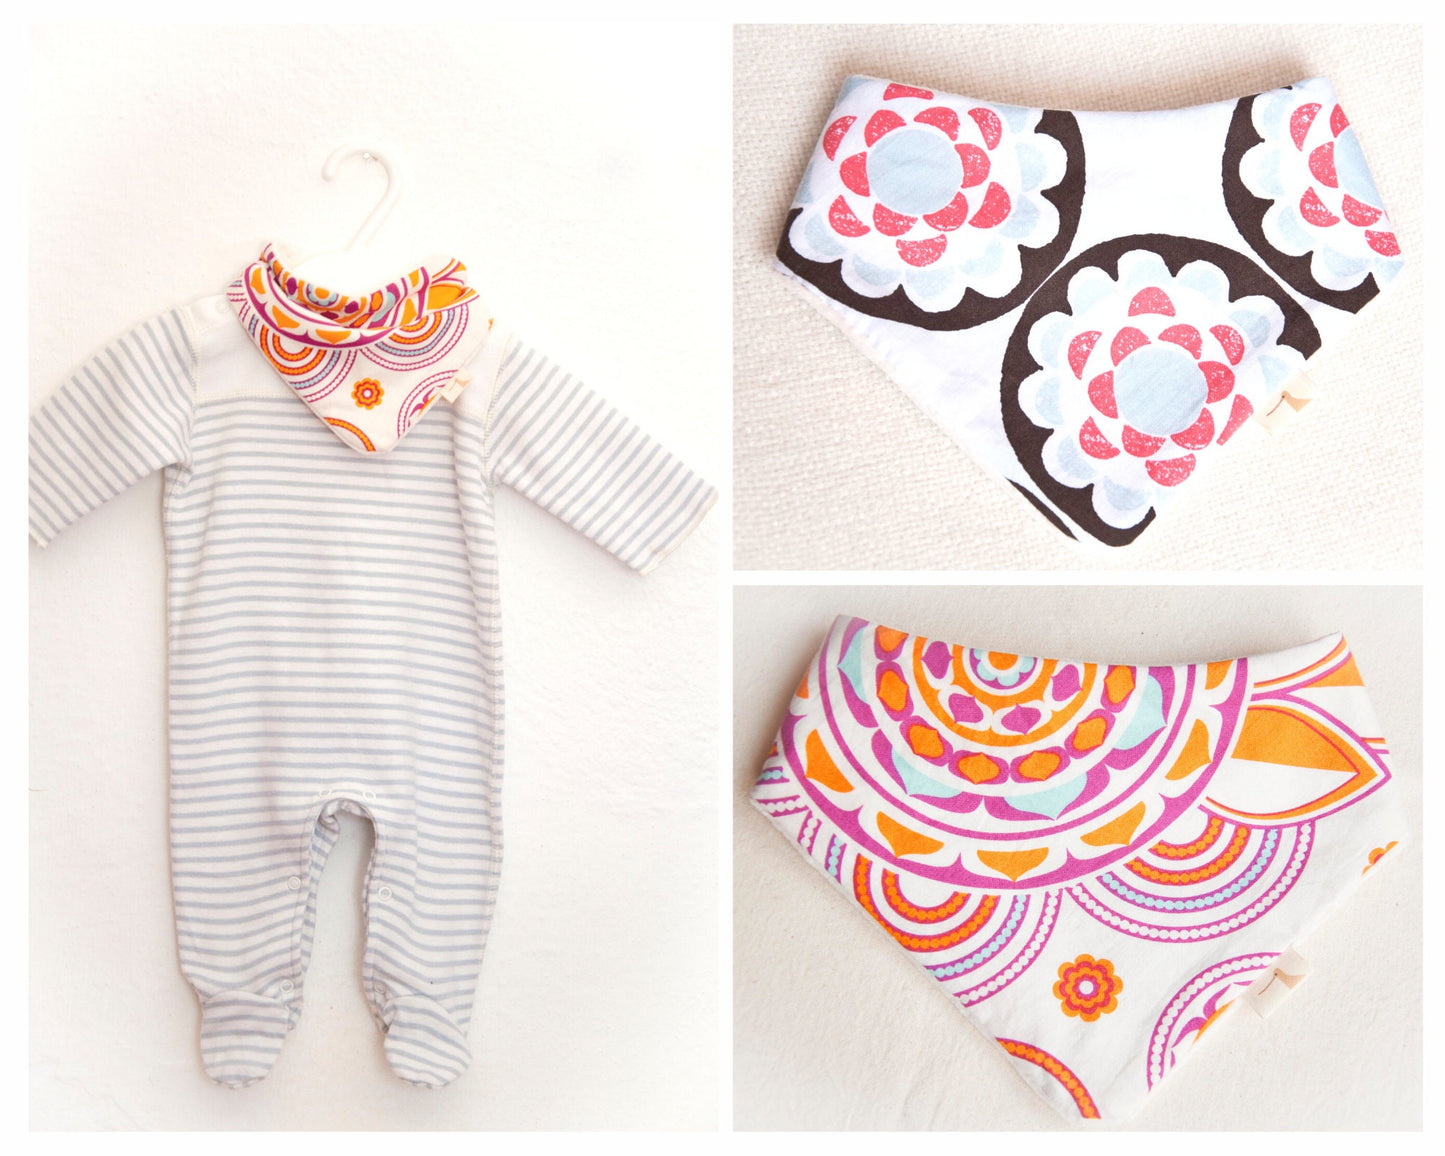 BANDANA baby bib - sewing pattern